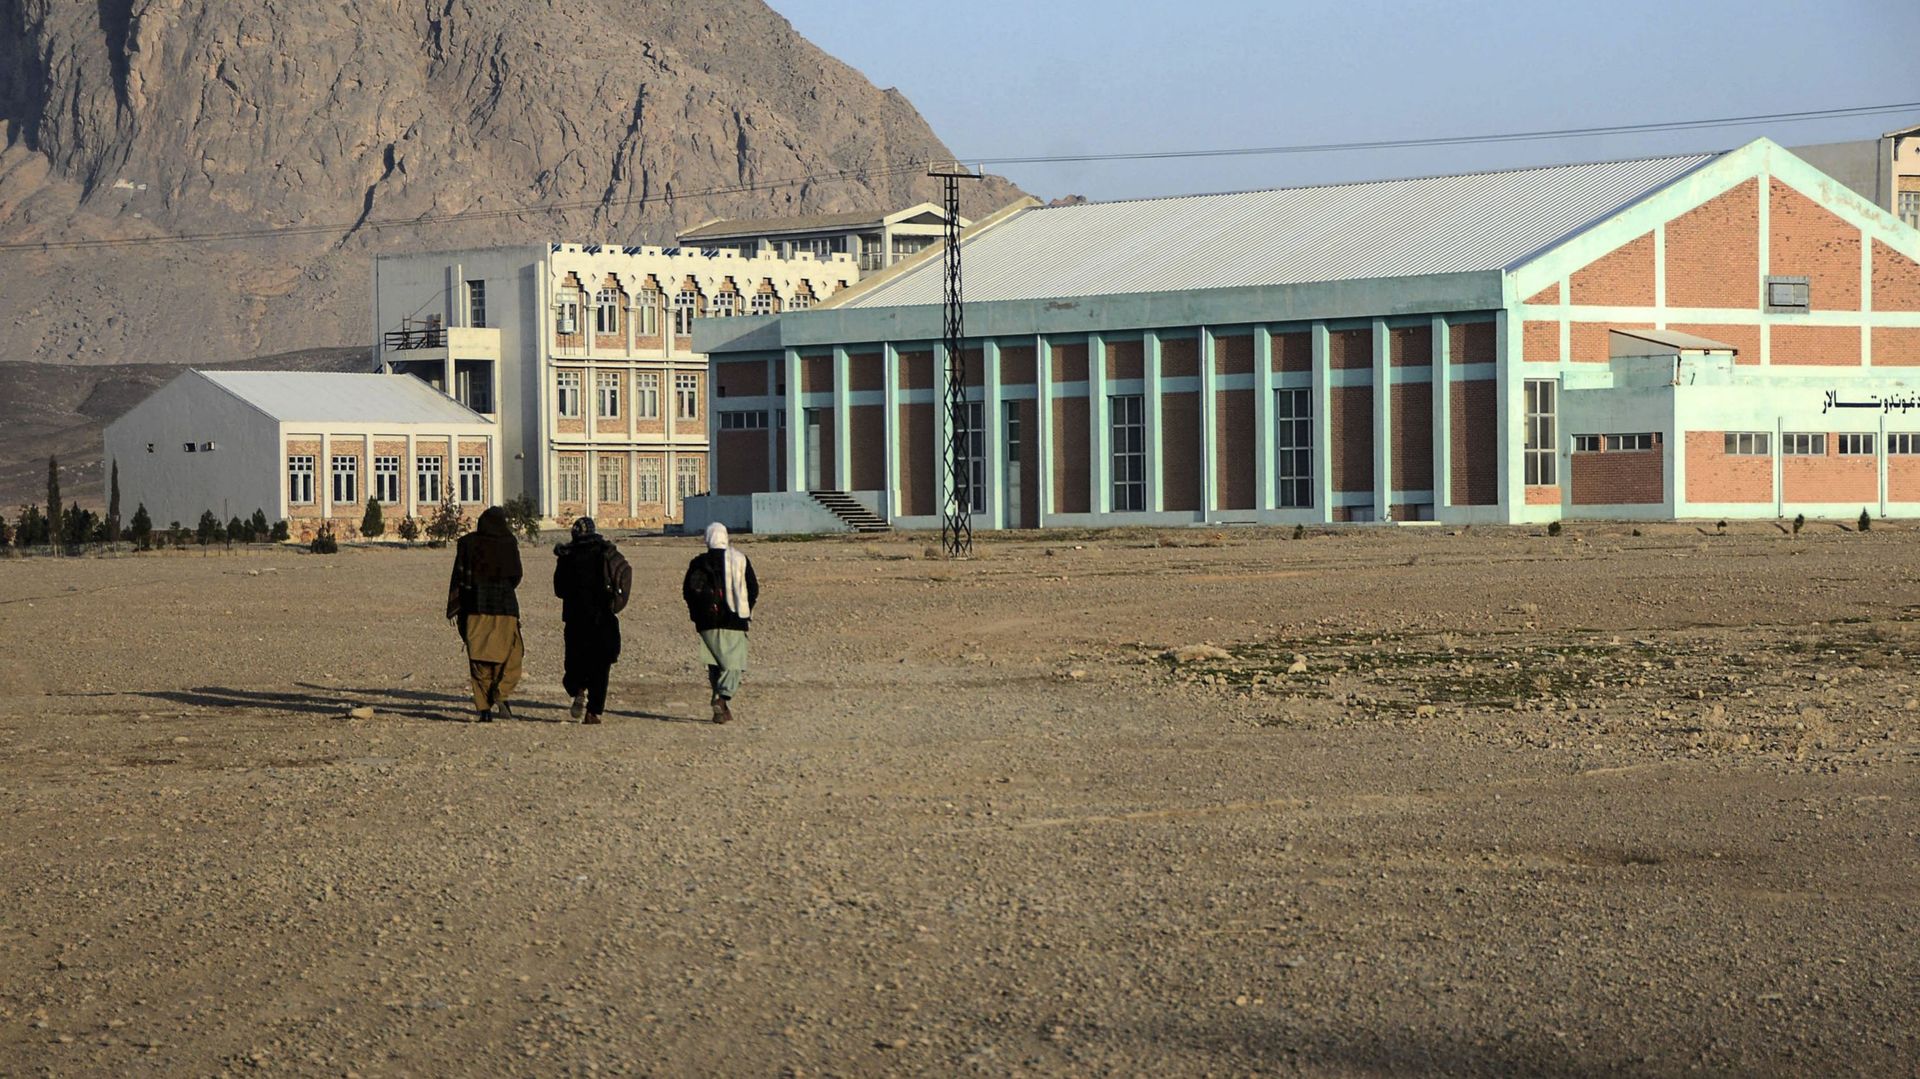 Des étudiants marchent dans la cour de l’université de Kandahar alors que les talibans ont rouvert les universités publiques dans certaines provinces, à Kandahar, le 2 février 2022